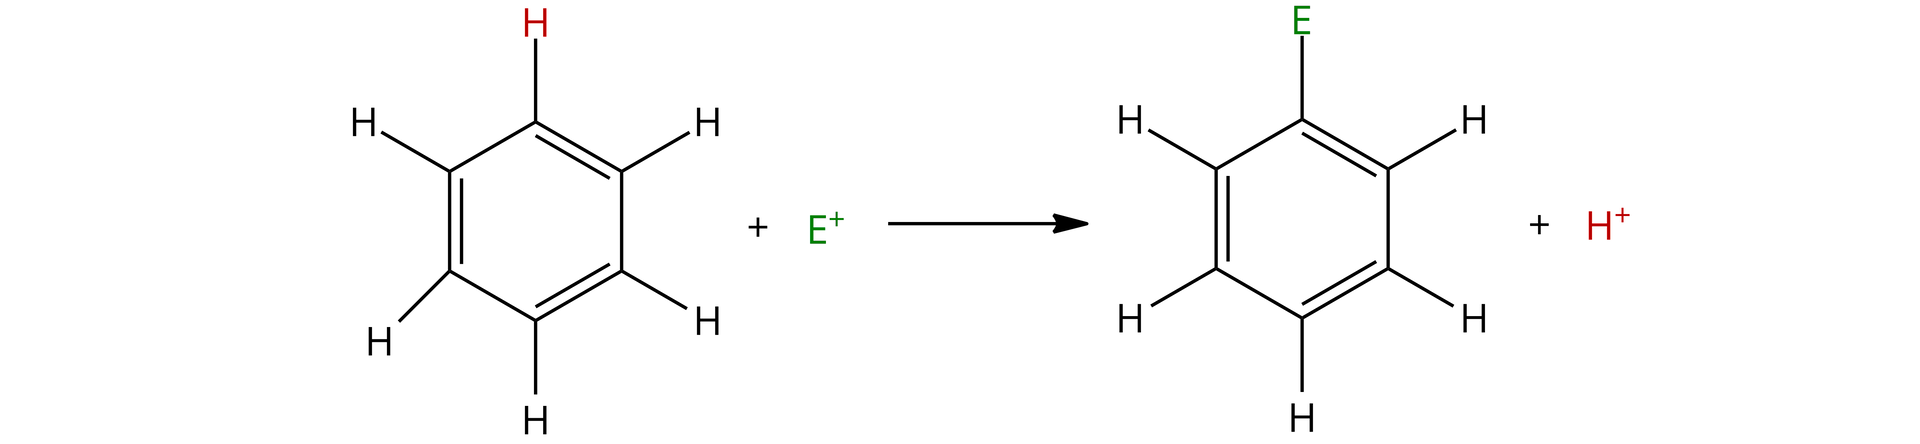 Na ilustracji znajduje się schemat substytucji elektrofilowej dla cząsteczki benzenu. Elektrofil oznaczony jest symbolem E indeks górny plus. Sześcioczłonowy pierścień benzenu w którym występują na przemian wiązania podwójne i pojedyncze, do każdego atomu węgla dołączony jest jeden wodór, dodać elektrofil E indeks górny plus, strzałka w prawo, sześcioczłonowy pierścień benzenu, w którym jeden z atomów wodoru został zastąpiony przez E dodać proton.